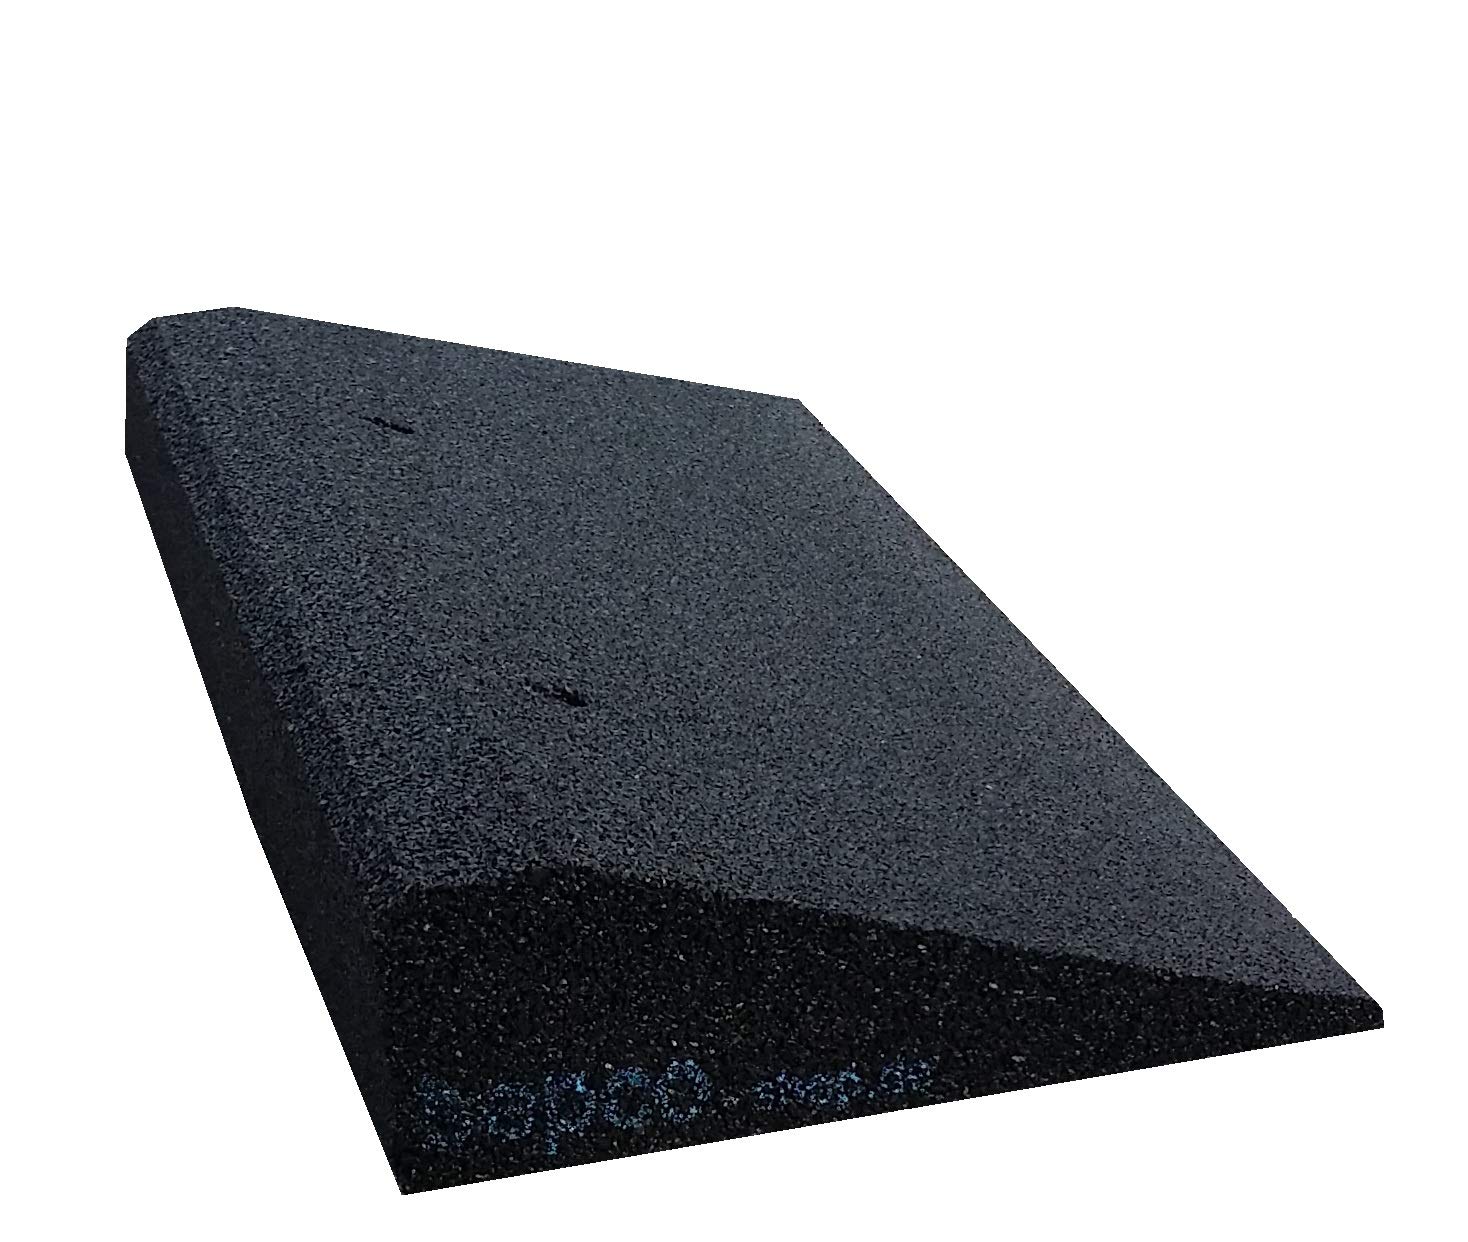 bepco Bordsteinkanten-Rampe, LxBxH: 50 x 25 x 8 cm aus Gummi (schwarz) Auffahrrampe,Türschwellenrampe, mit eingelagerten Unterlegscheiben zur Befestigung